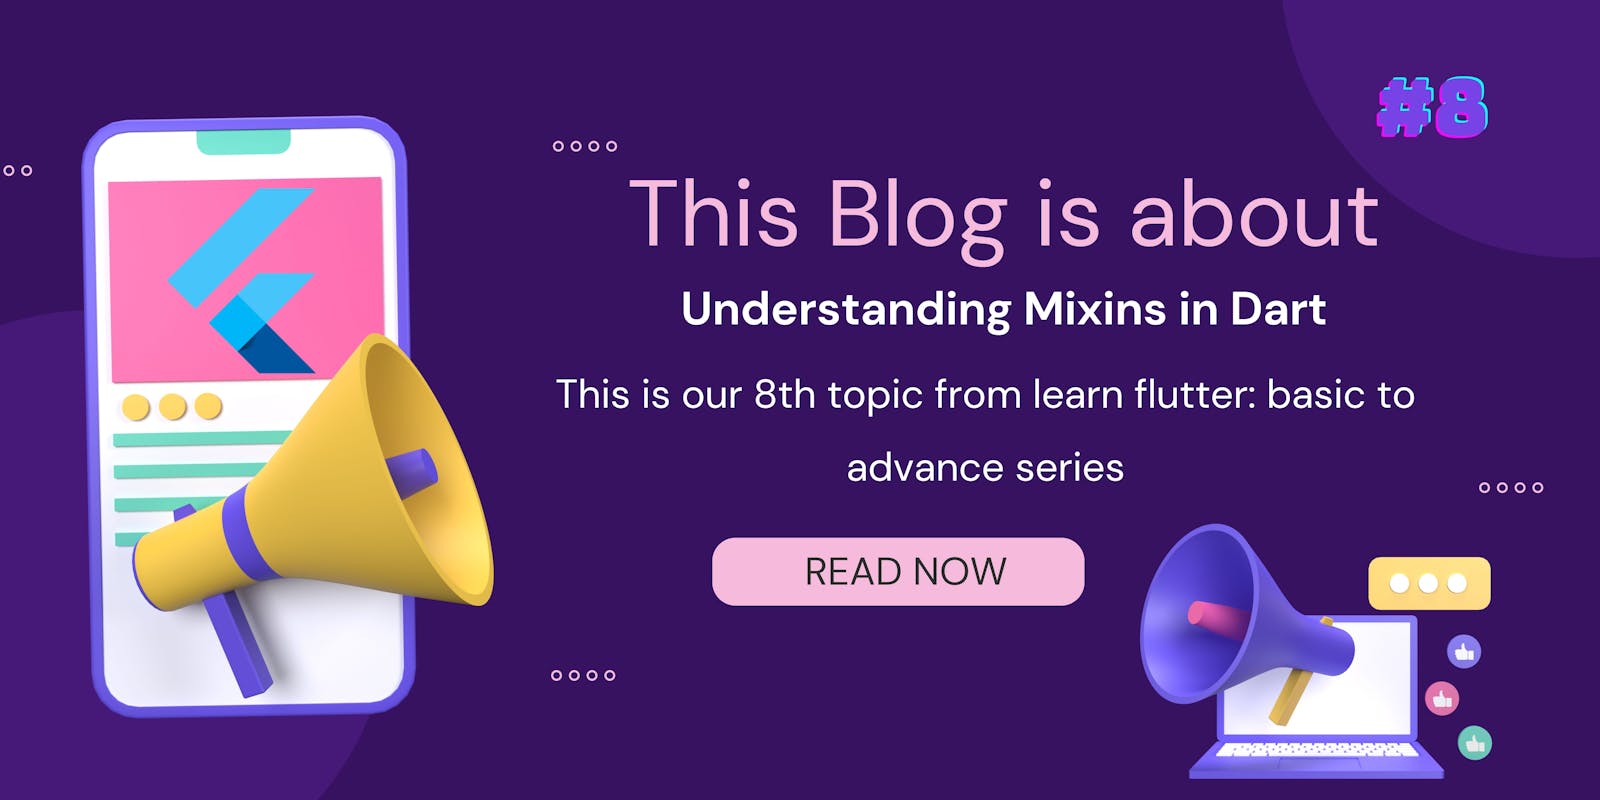 Topic: 8 Understanding Mixins in Dart